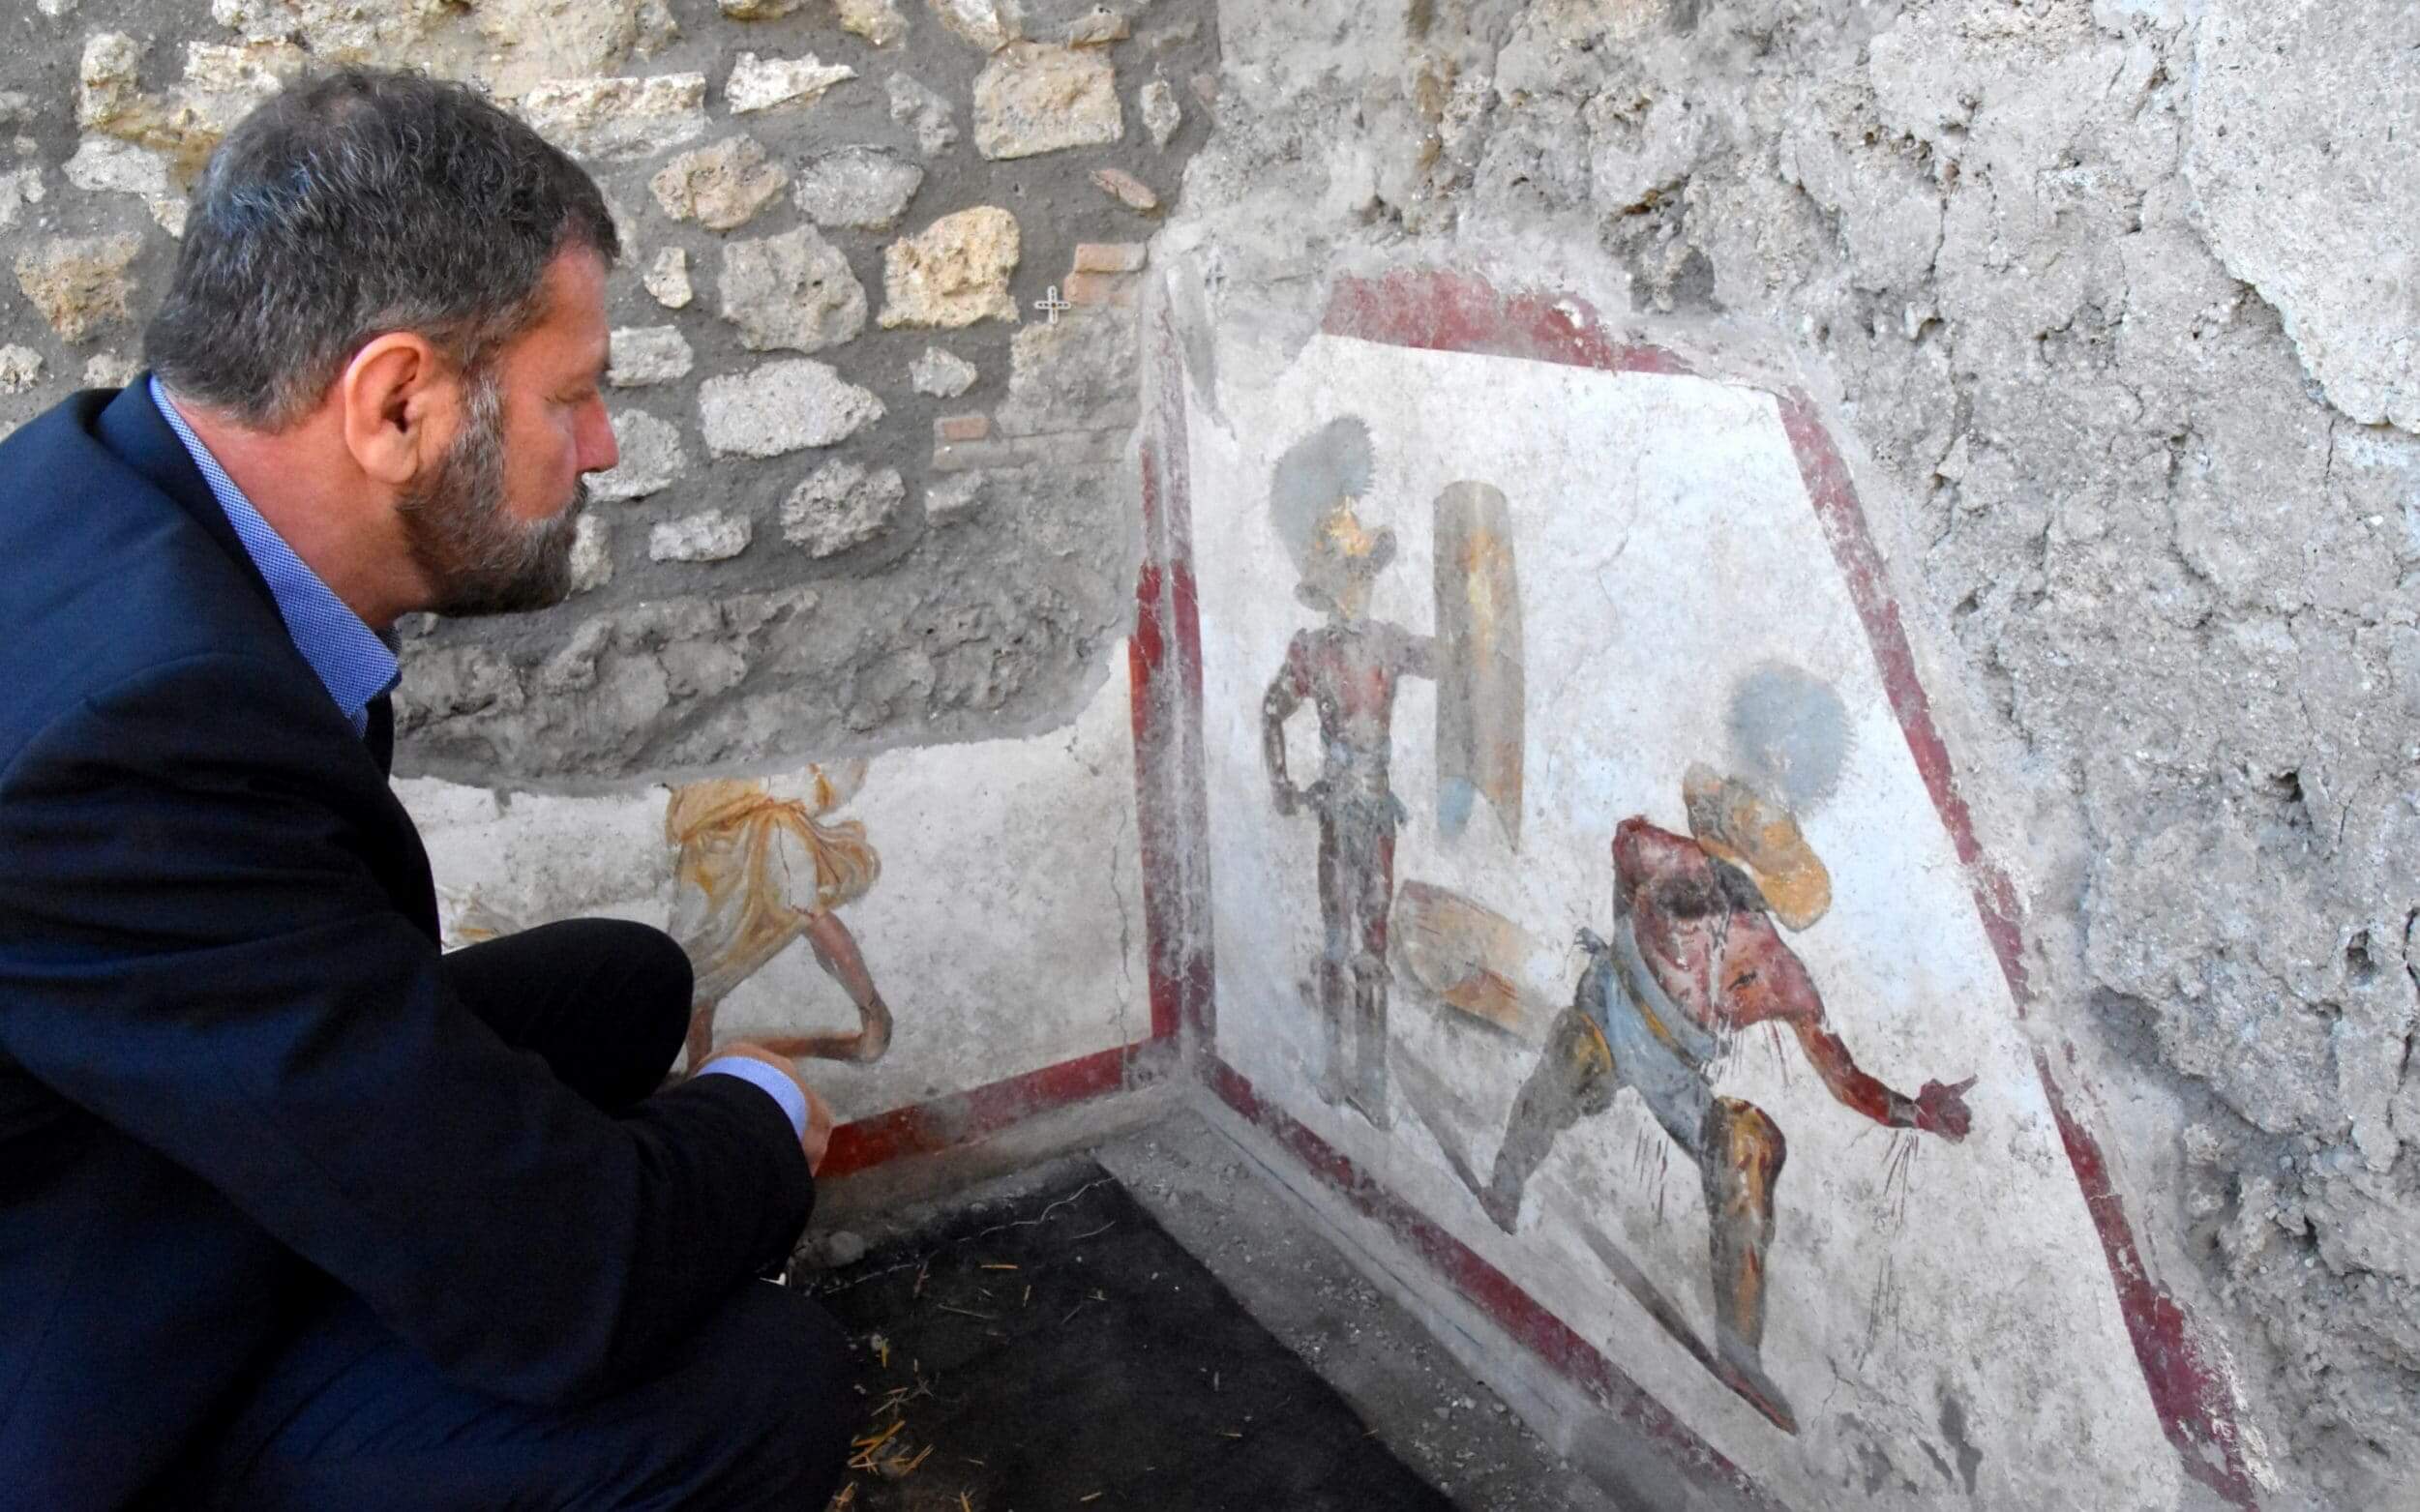 En pompeya encontrado la antigua imagen con sangrientas gladiadores